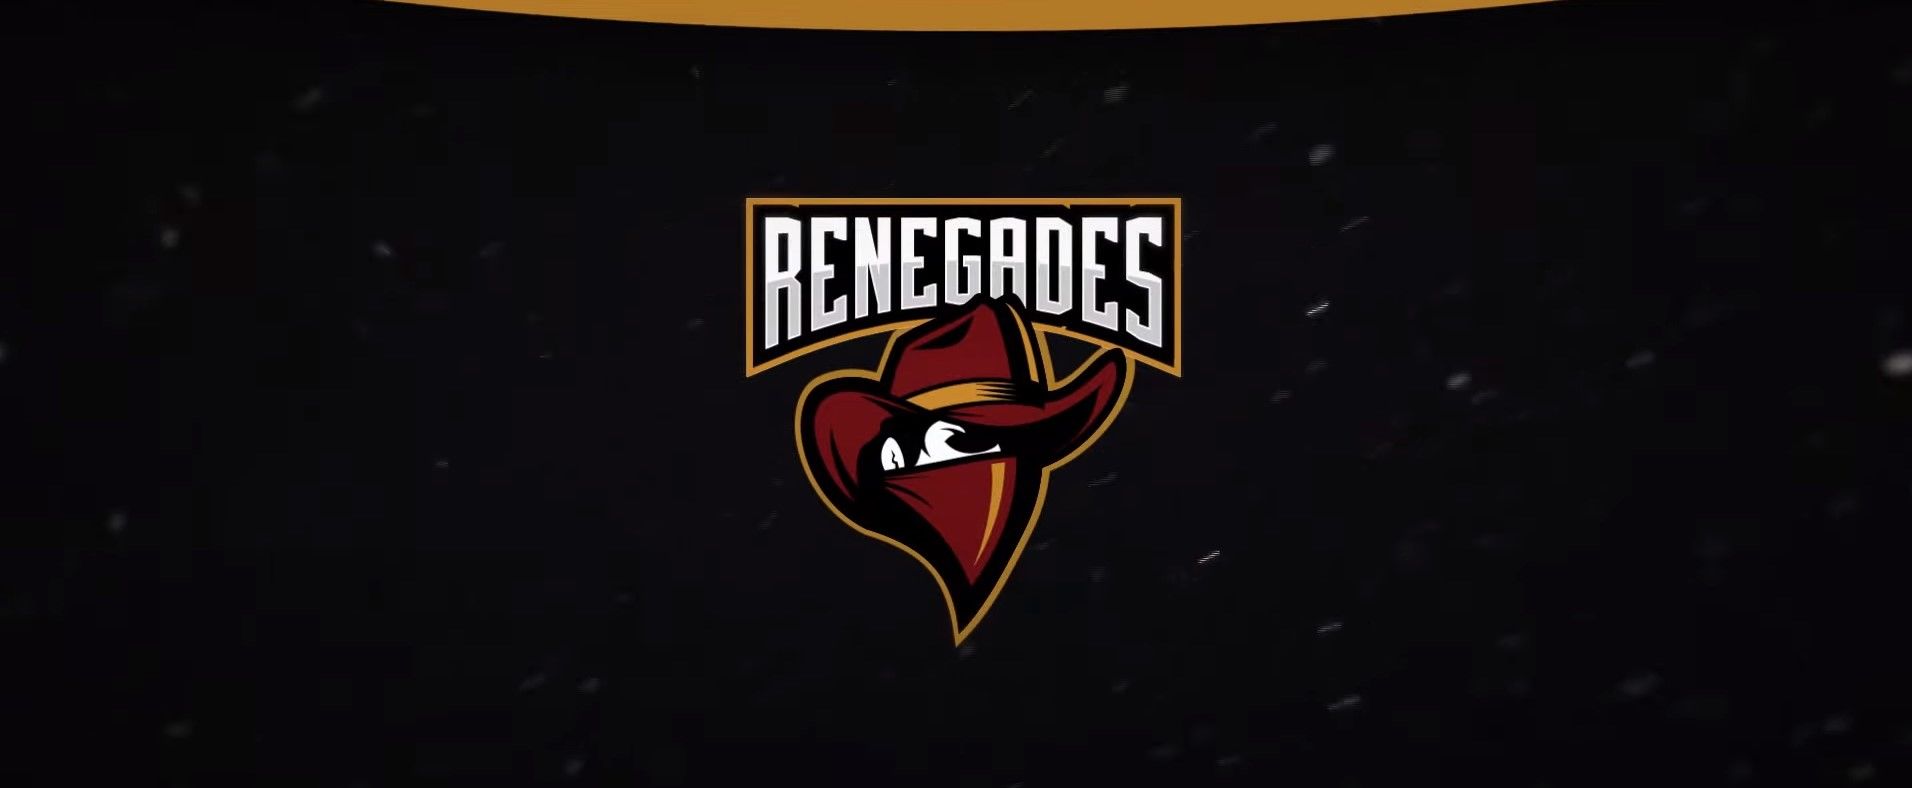 Renegades одержали первую победу на EPL Season 13 в последнем матче групповой стадии